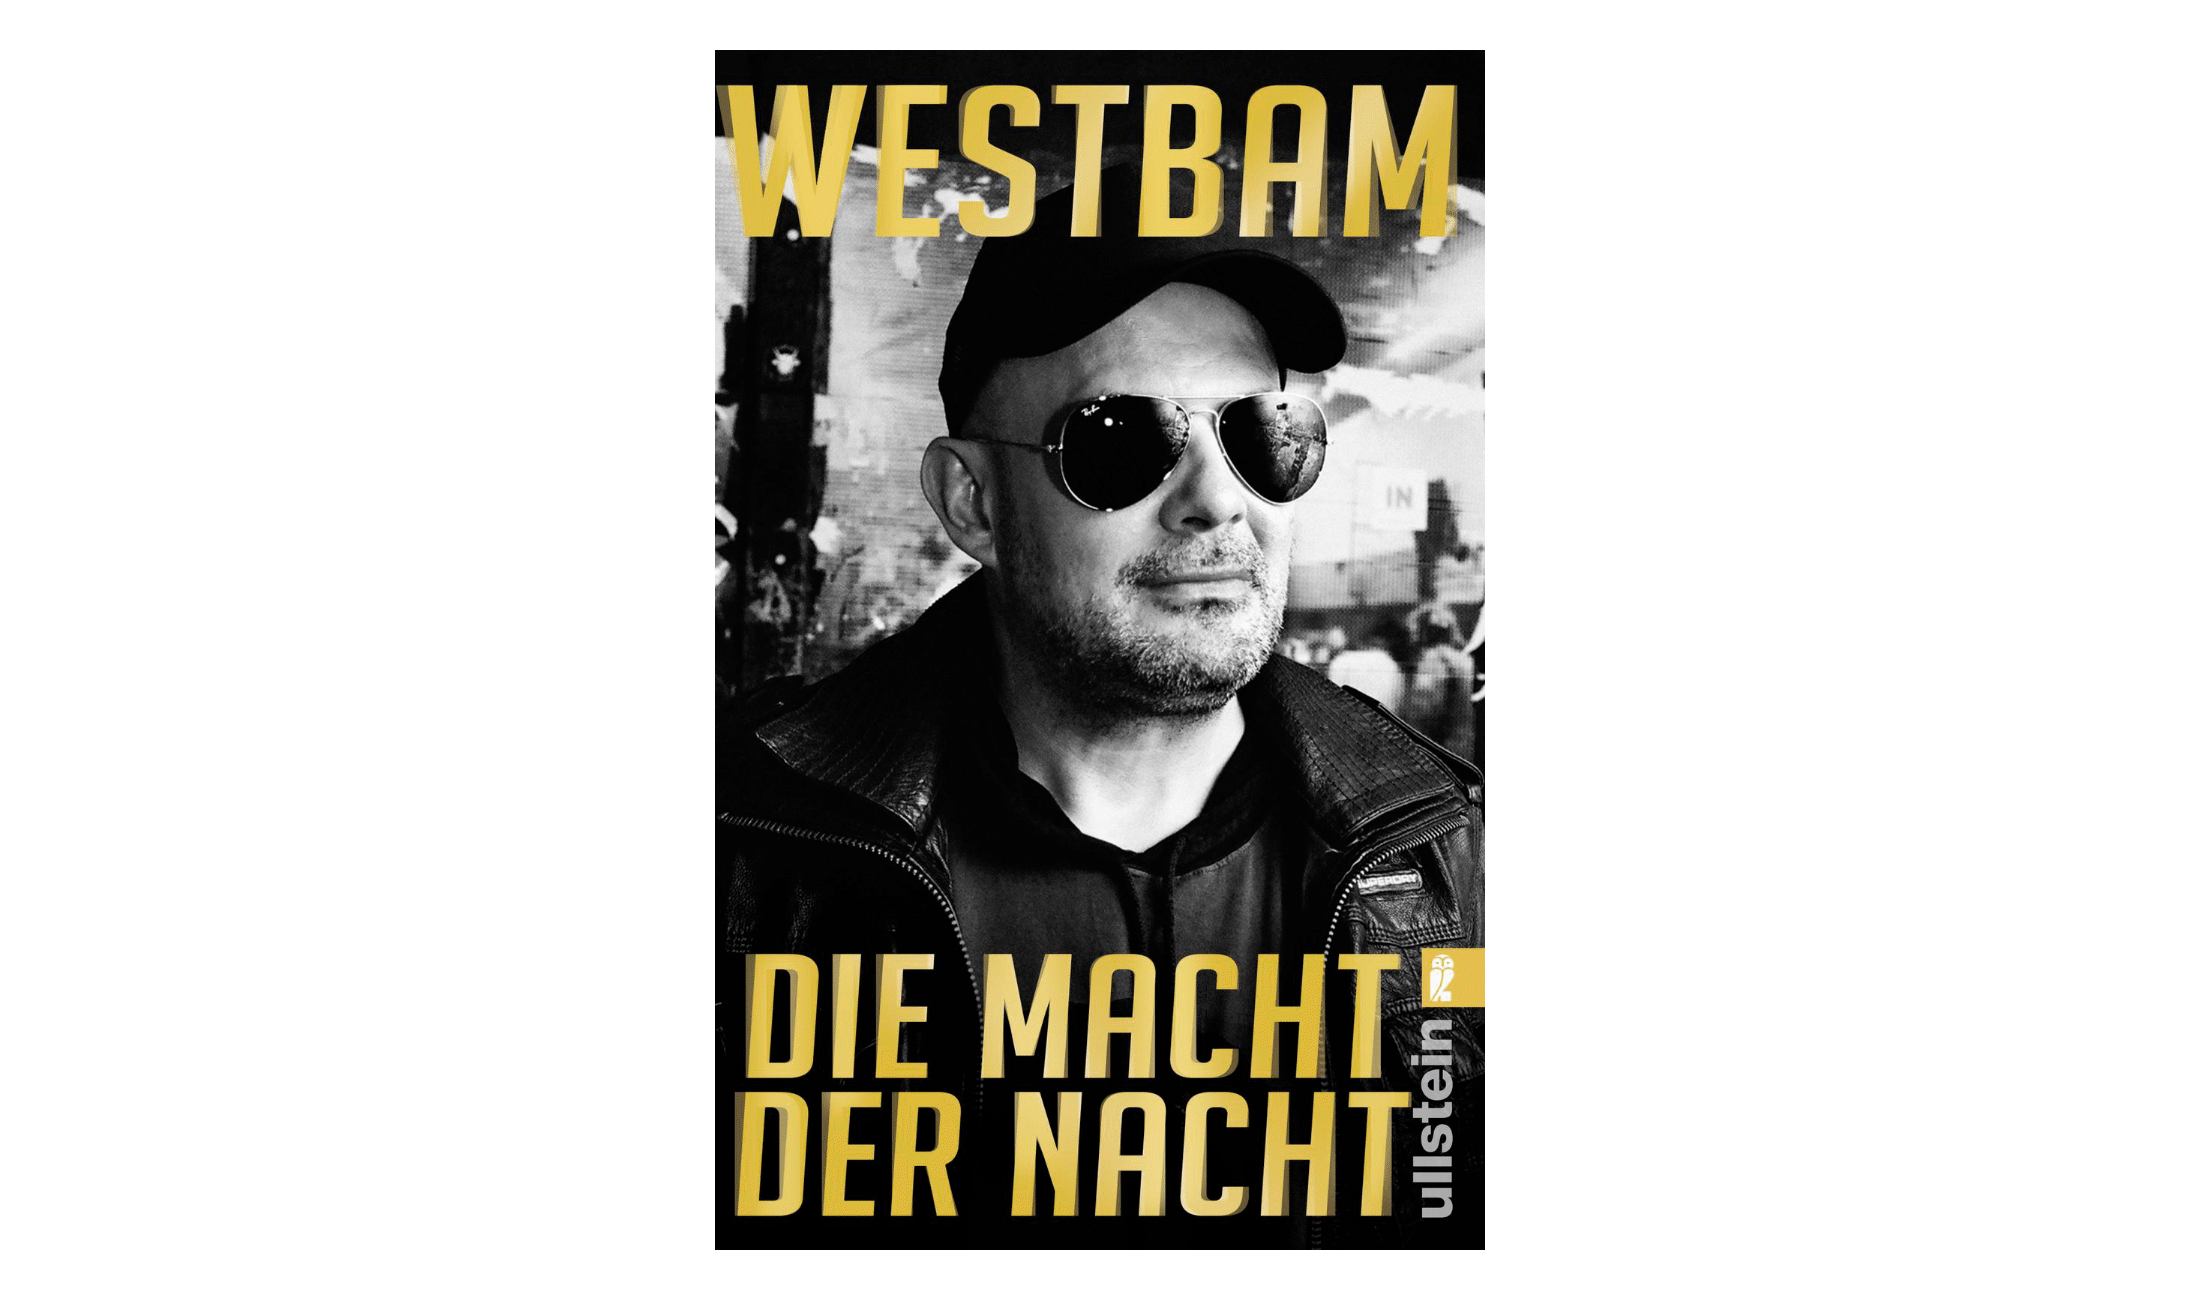 Techno Autobiographie: Die Macht der Nacht von Westbam.